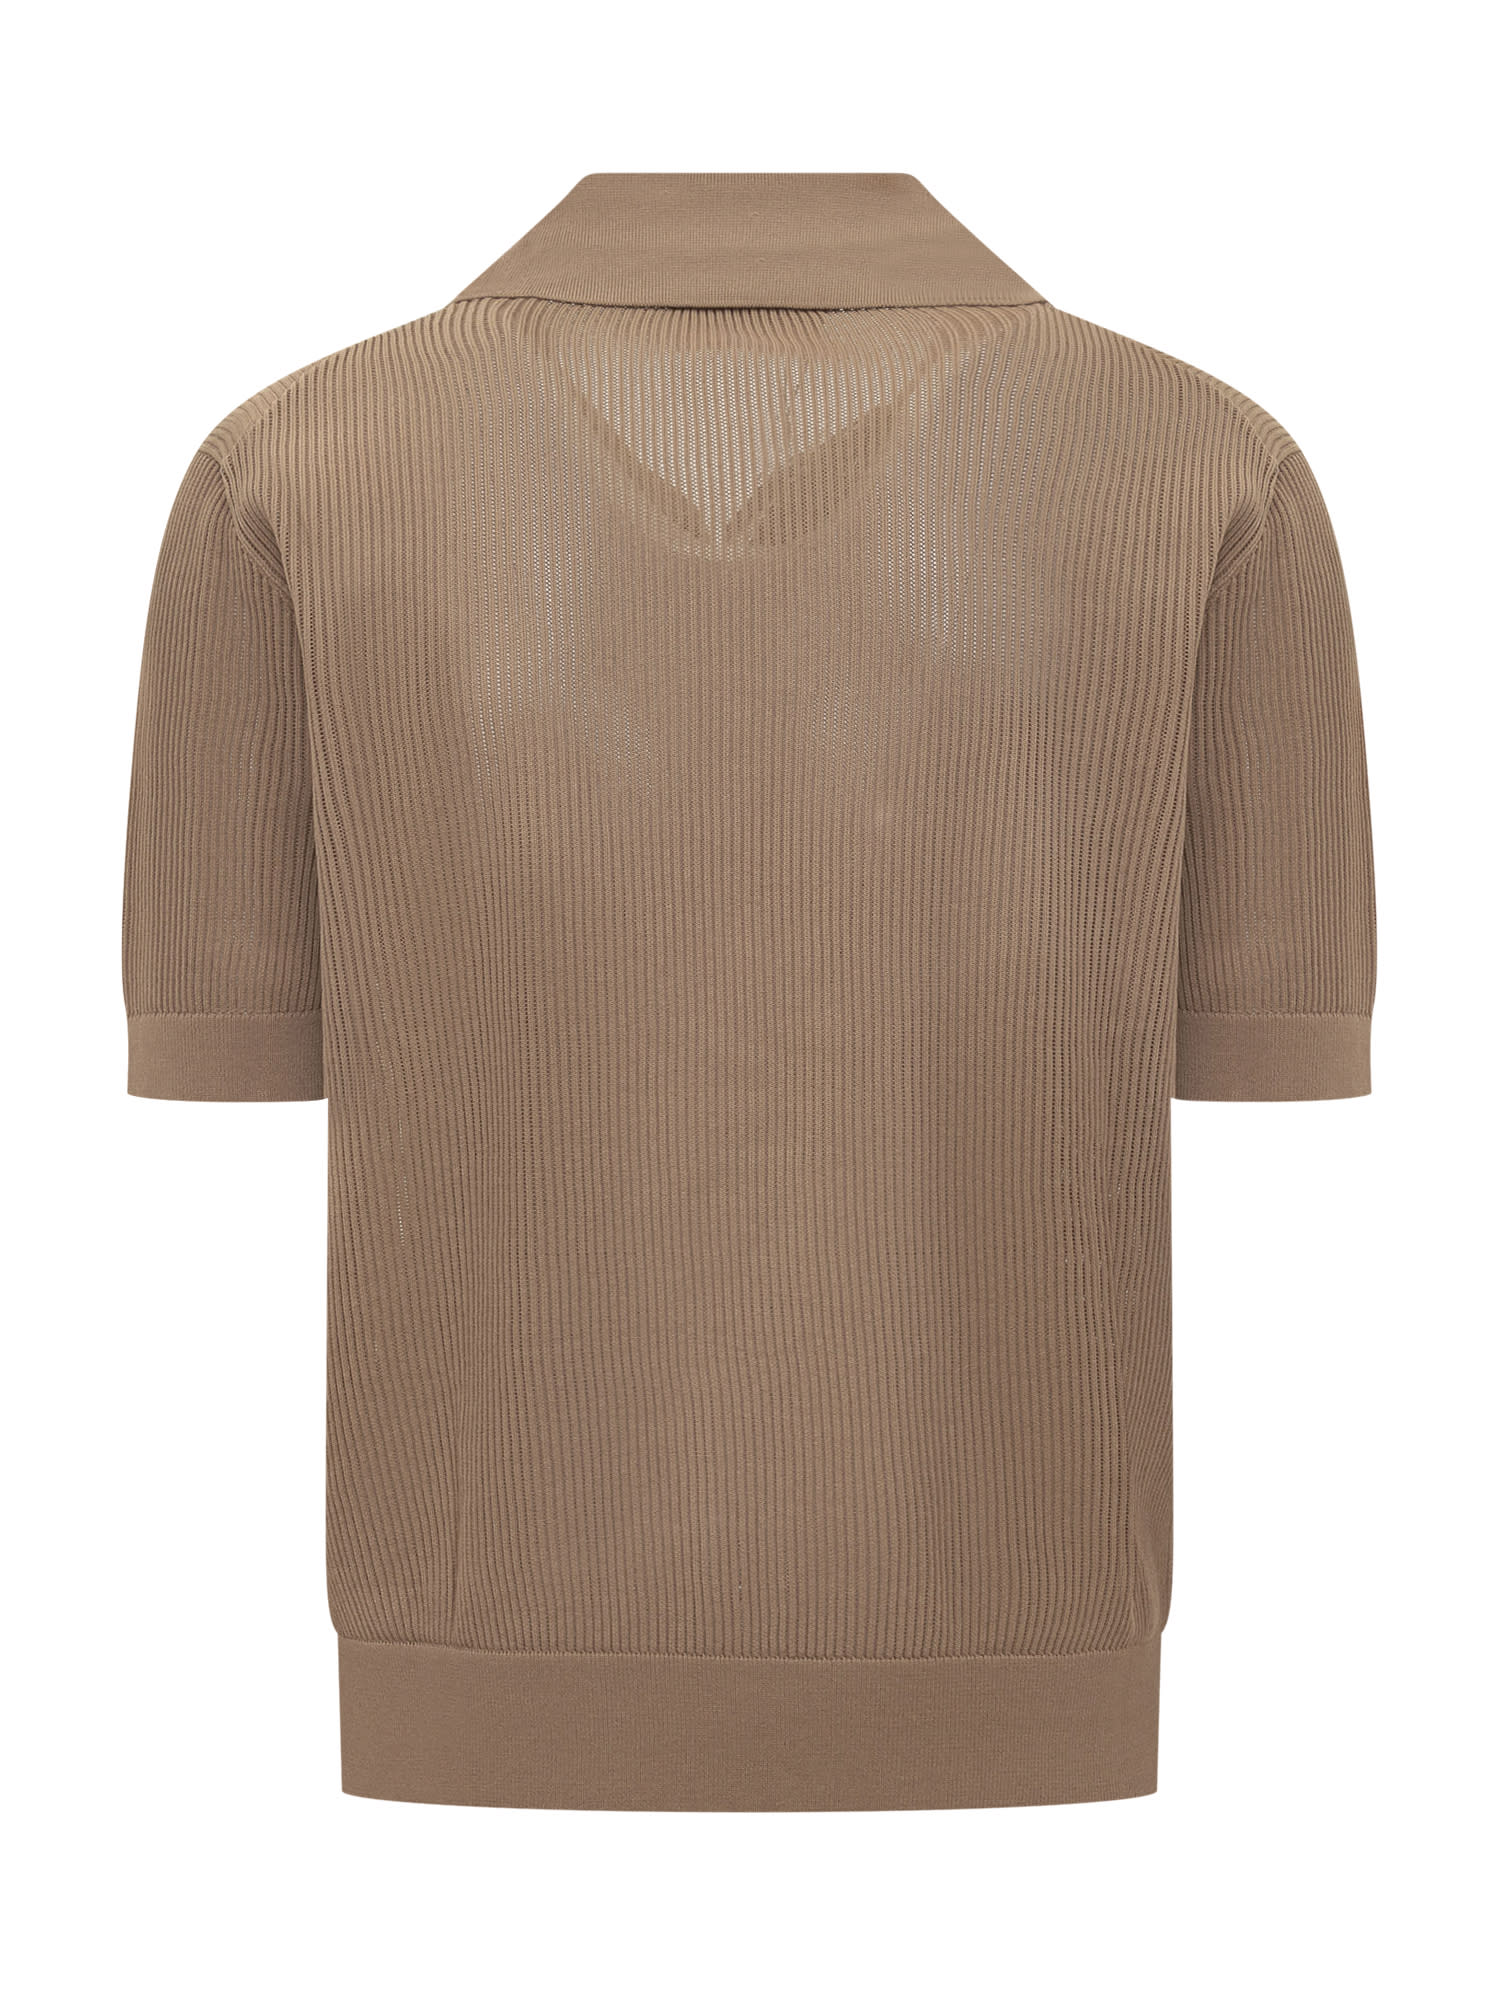 Shop Dolce & Gabbana Cotton Polo Shirt In Beige 10